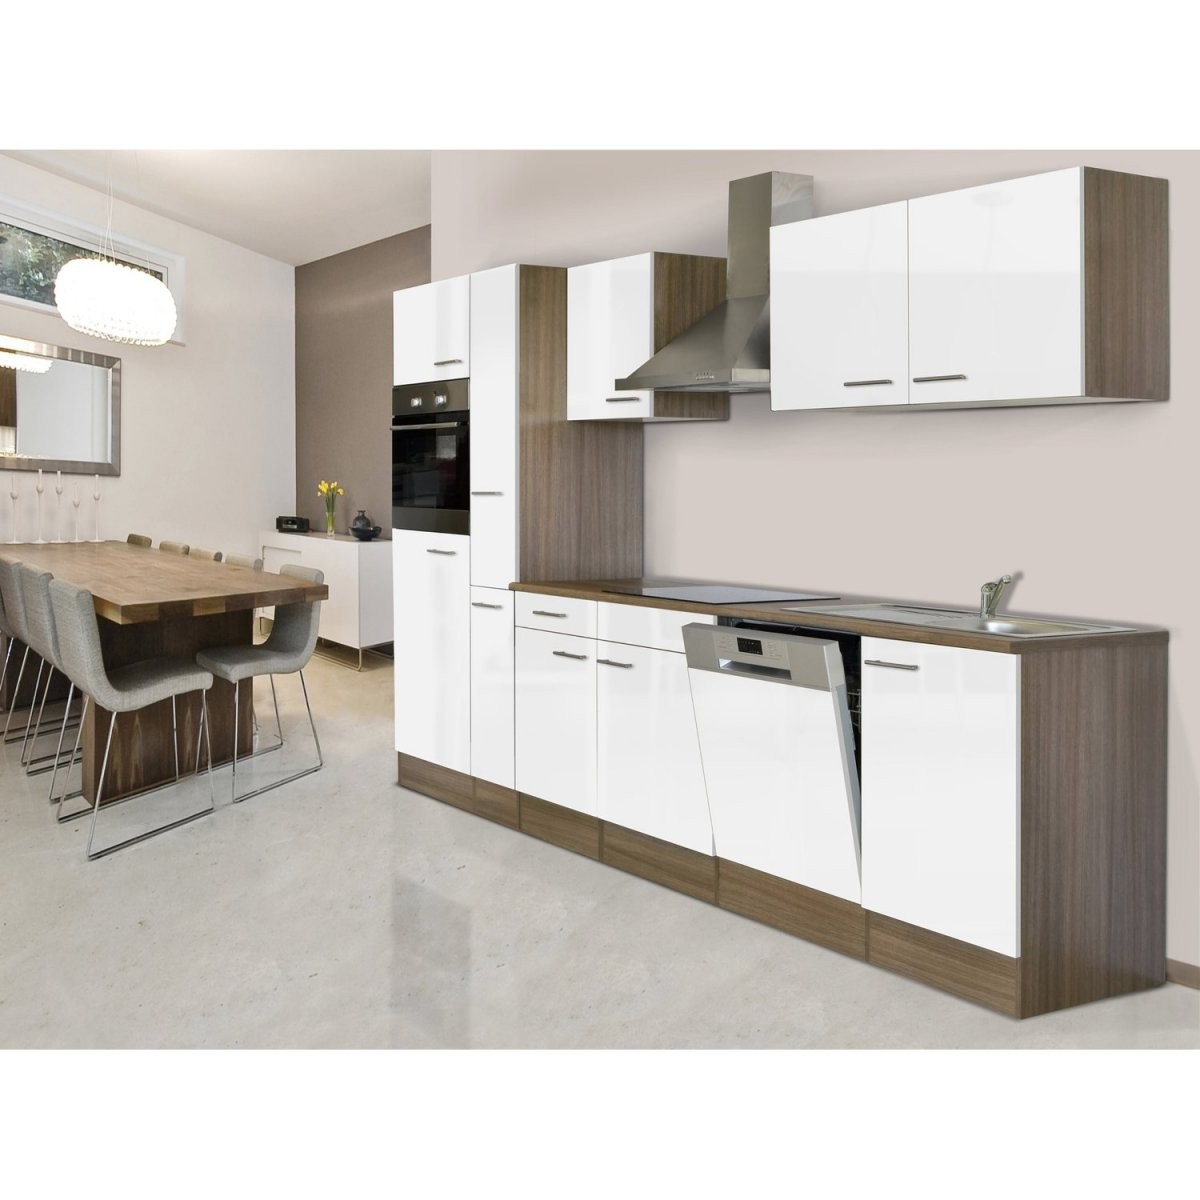 Sandedelstahl Küchenzeilen Online Kaufen  Möbelsuchmaschine von Küche Mit E Geräten Ohne Kühlschrank Bild